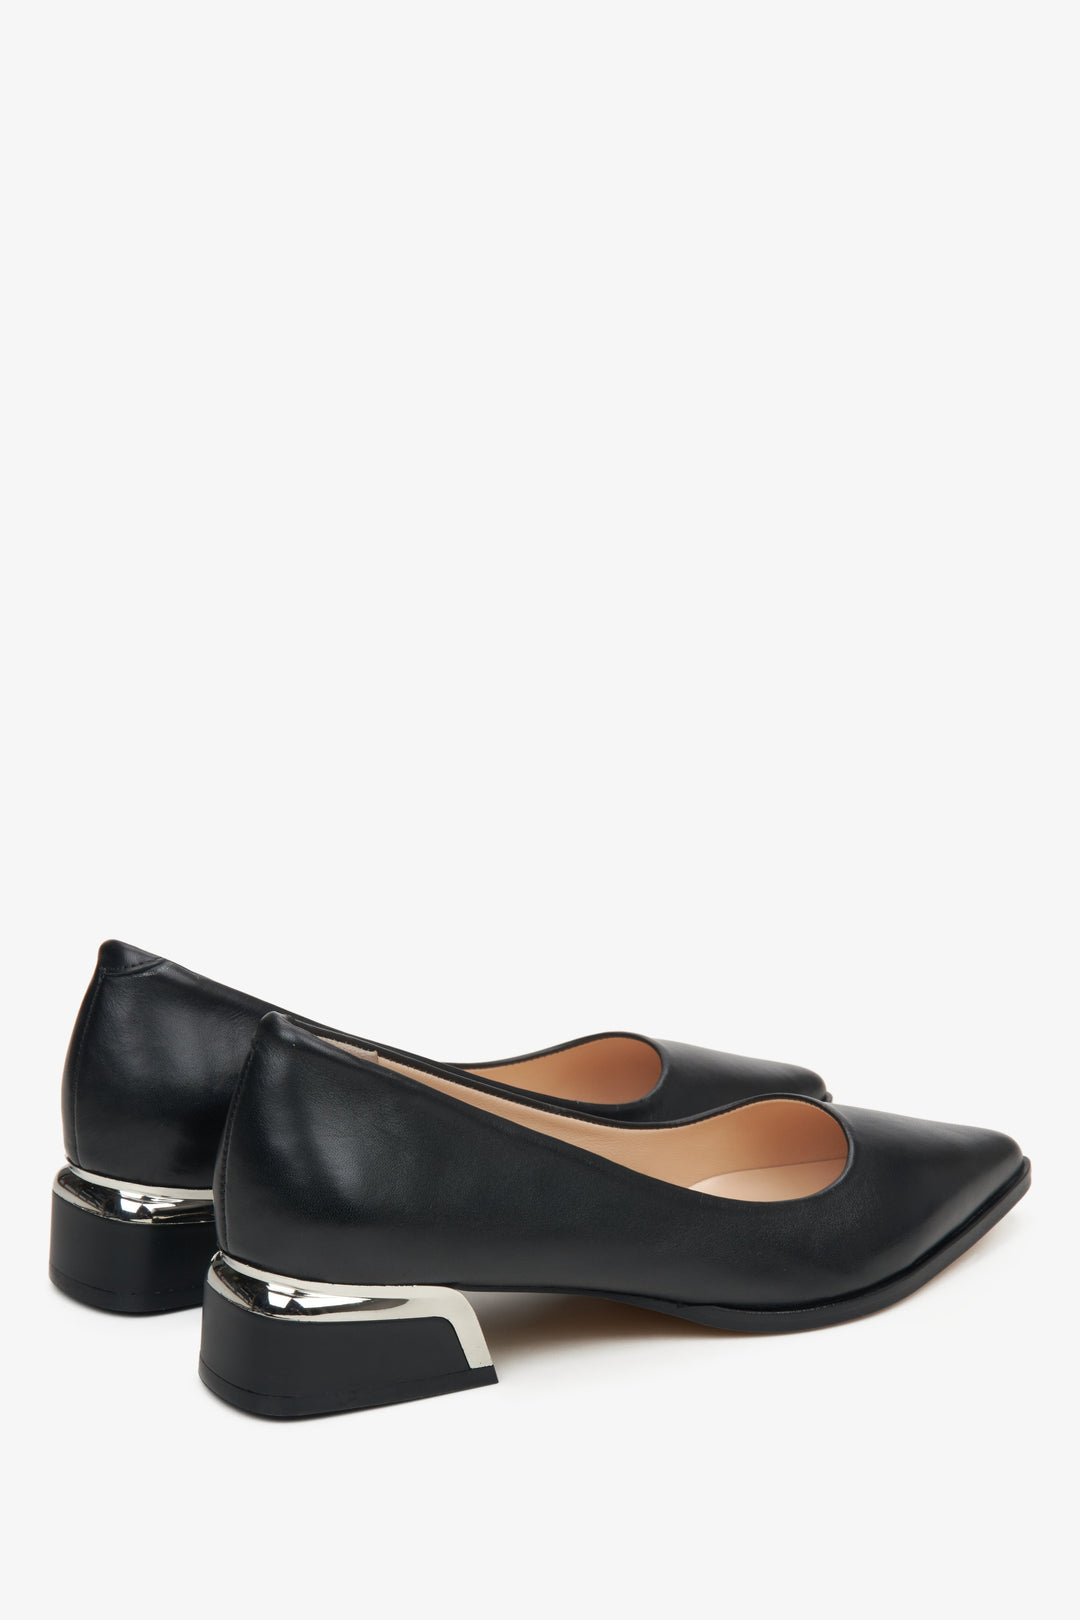 Damskie czarne skórzane czółenka Estro - zbliżenie na linię boczną buta i zapiętek.